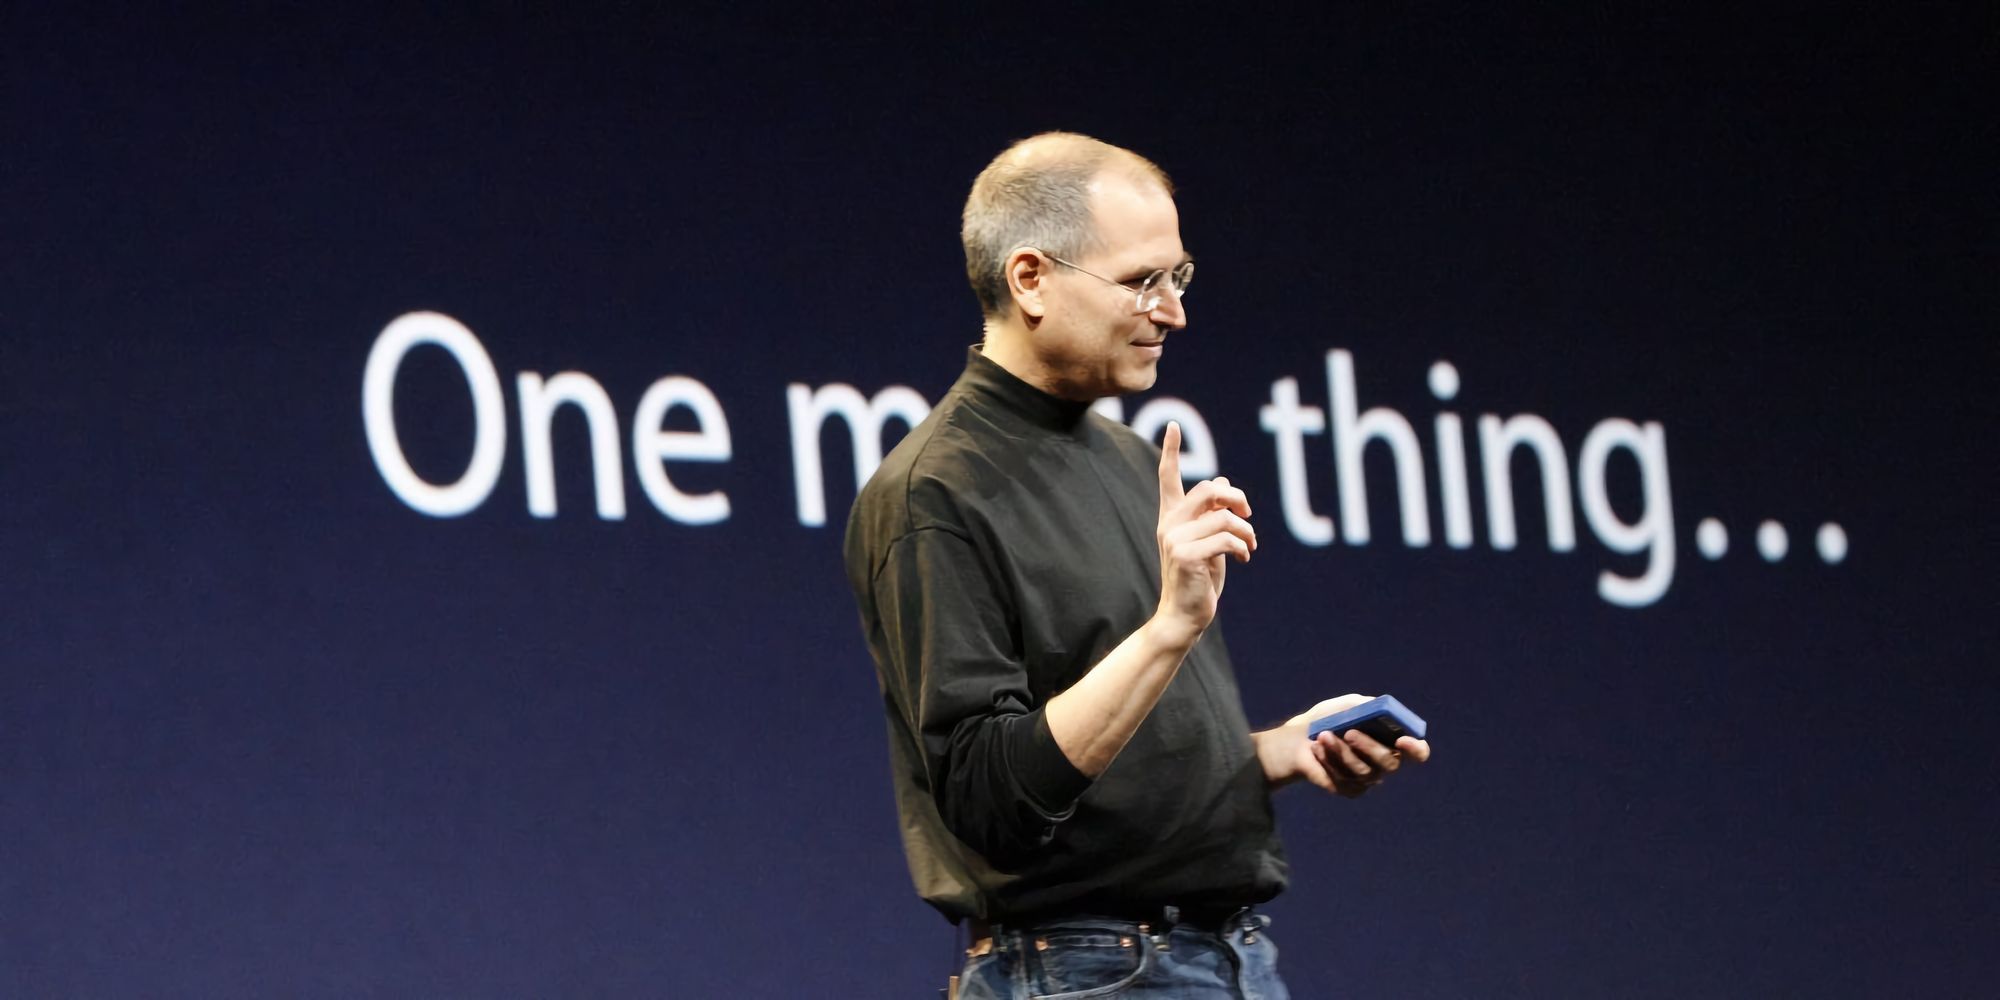 Conheces todos os “One more thing” das Keynotes da Apple?